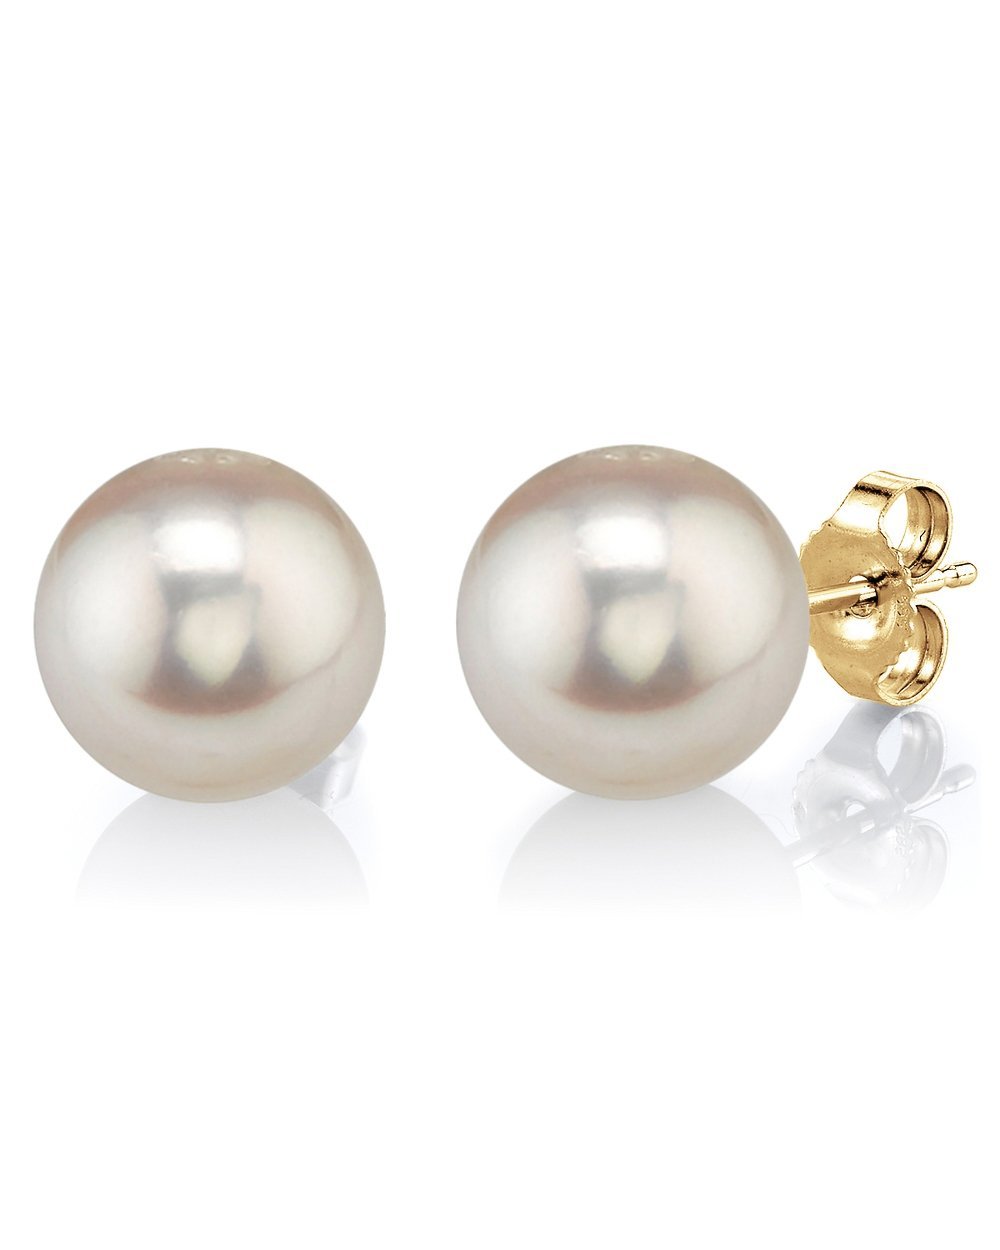 latest Trending white pearl earrings For girls And Women